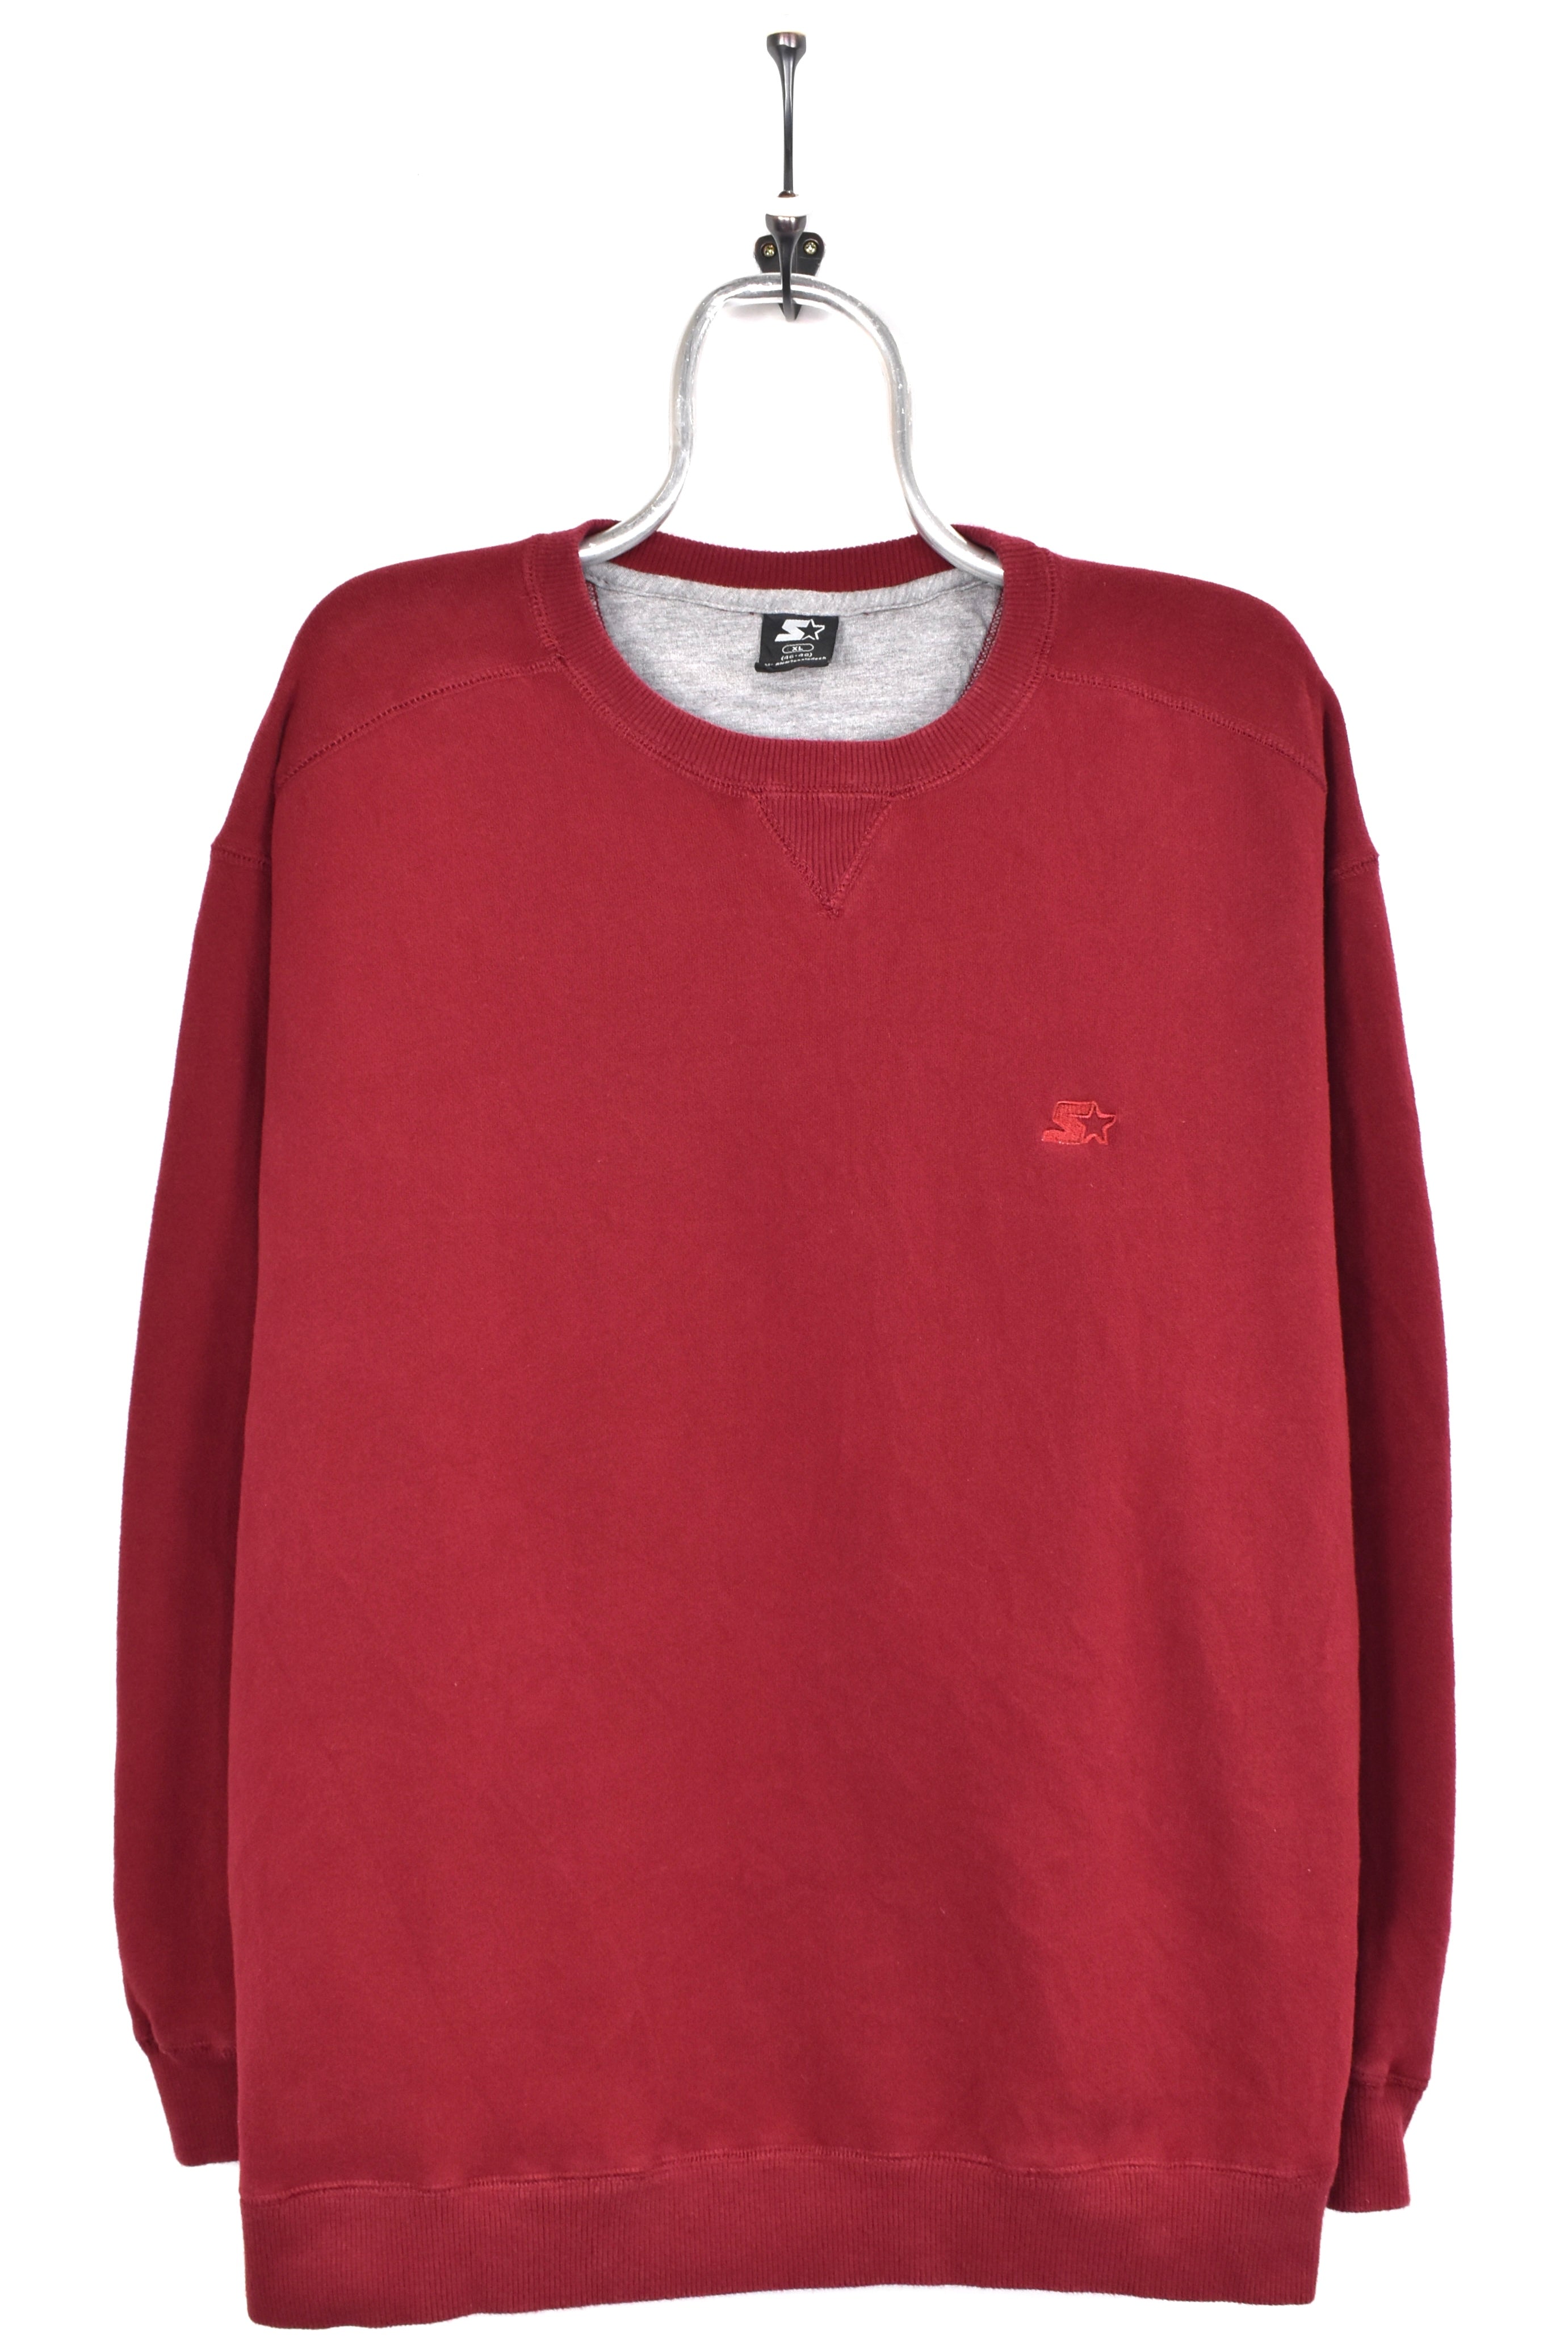 Vintage Starter sweatshirt, burgundy embroidered crewneck - AU XL STARTER